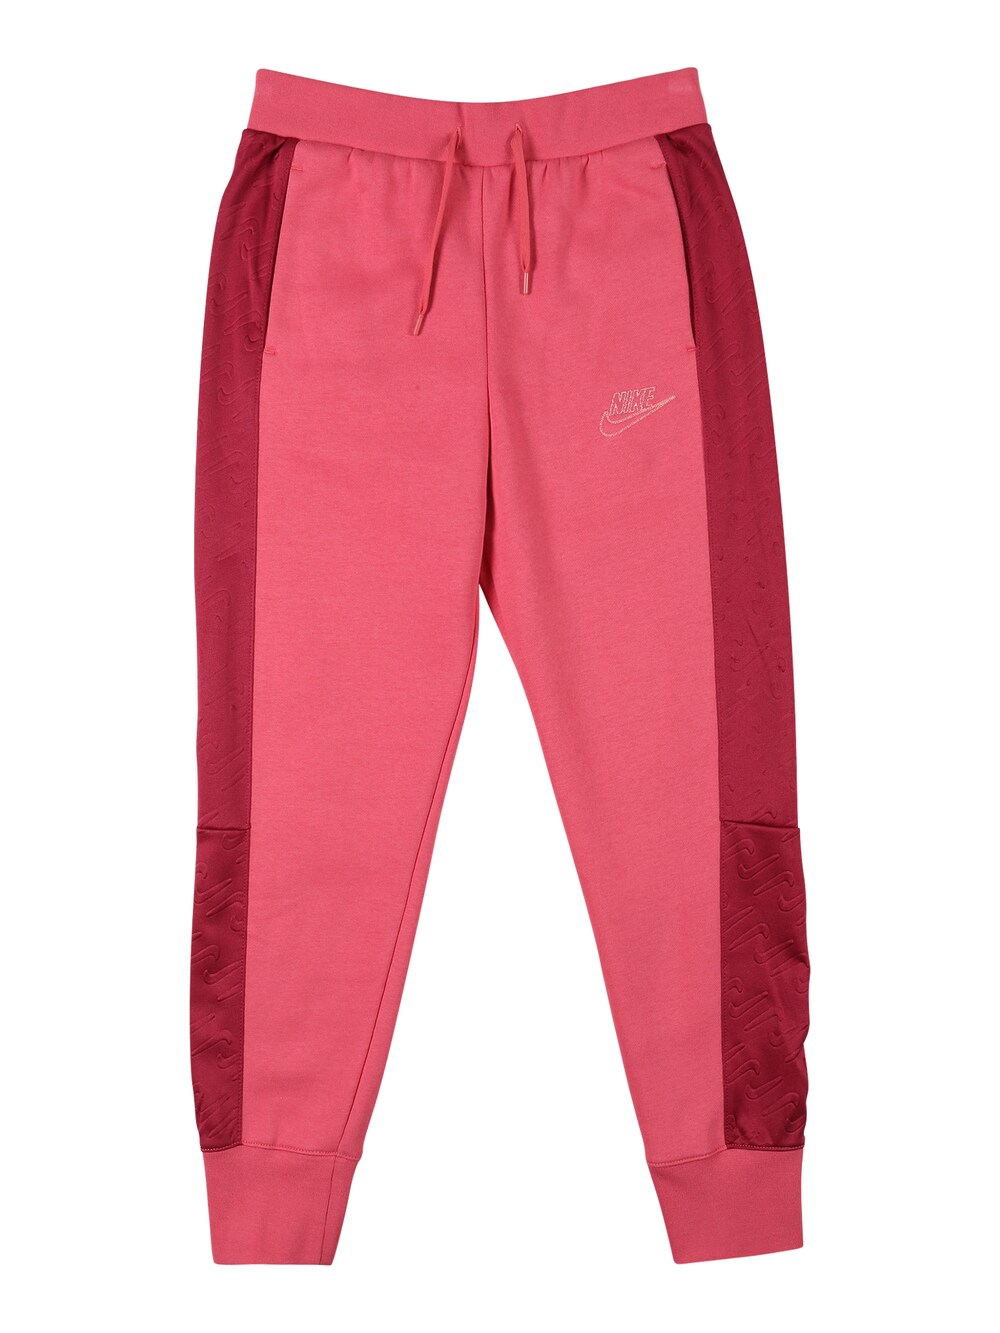 Зауженные брюки Nike Sportswear Icon Clash, розовый